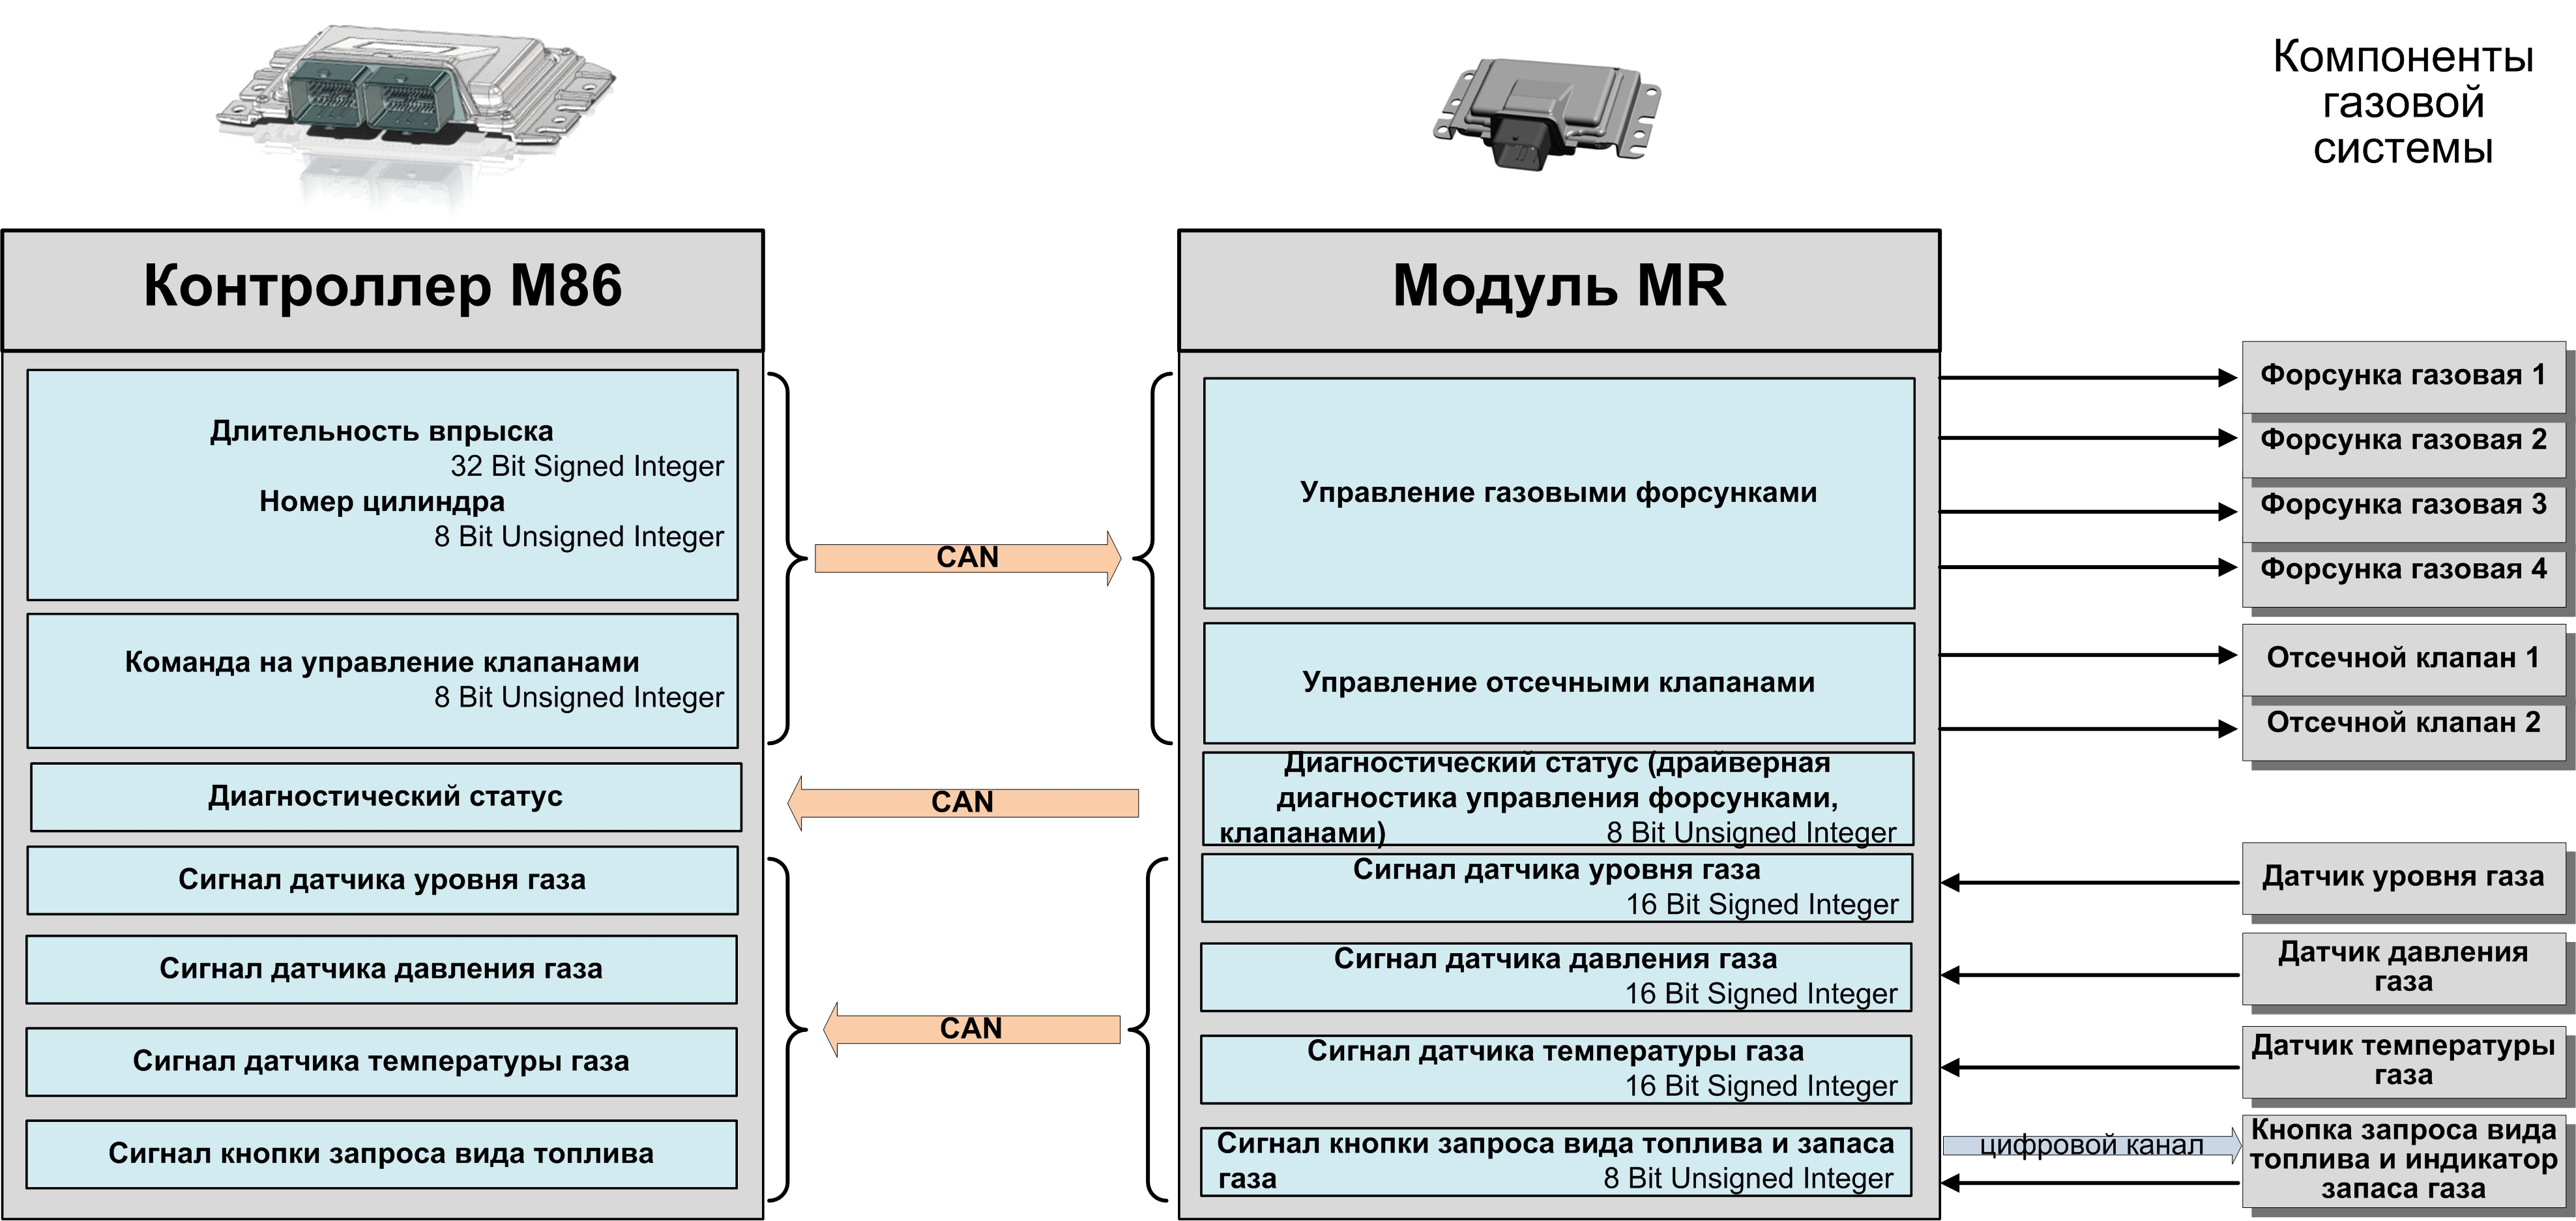 Первая в России серийная система управления двухтопливным двигателем с функциональным разделением контроллеров